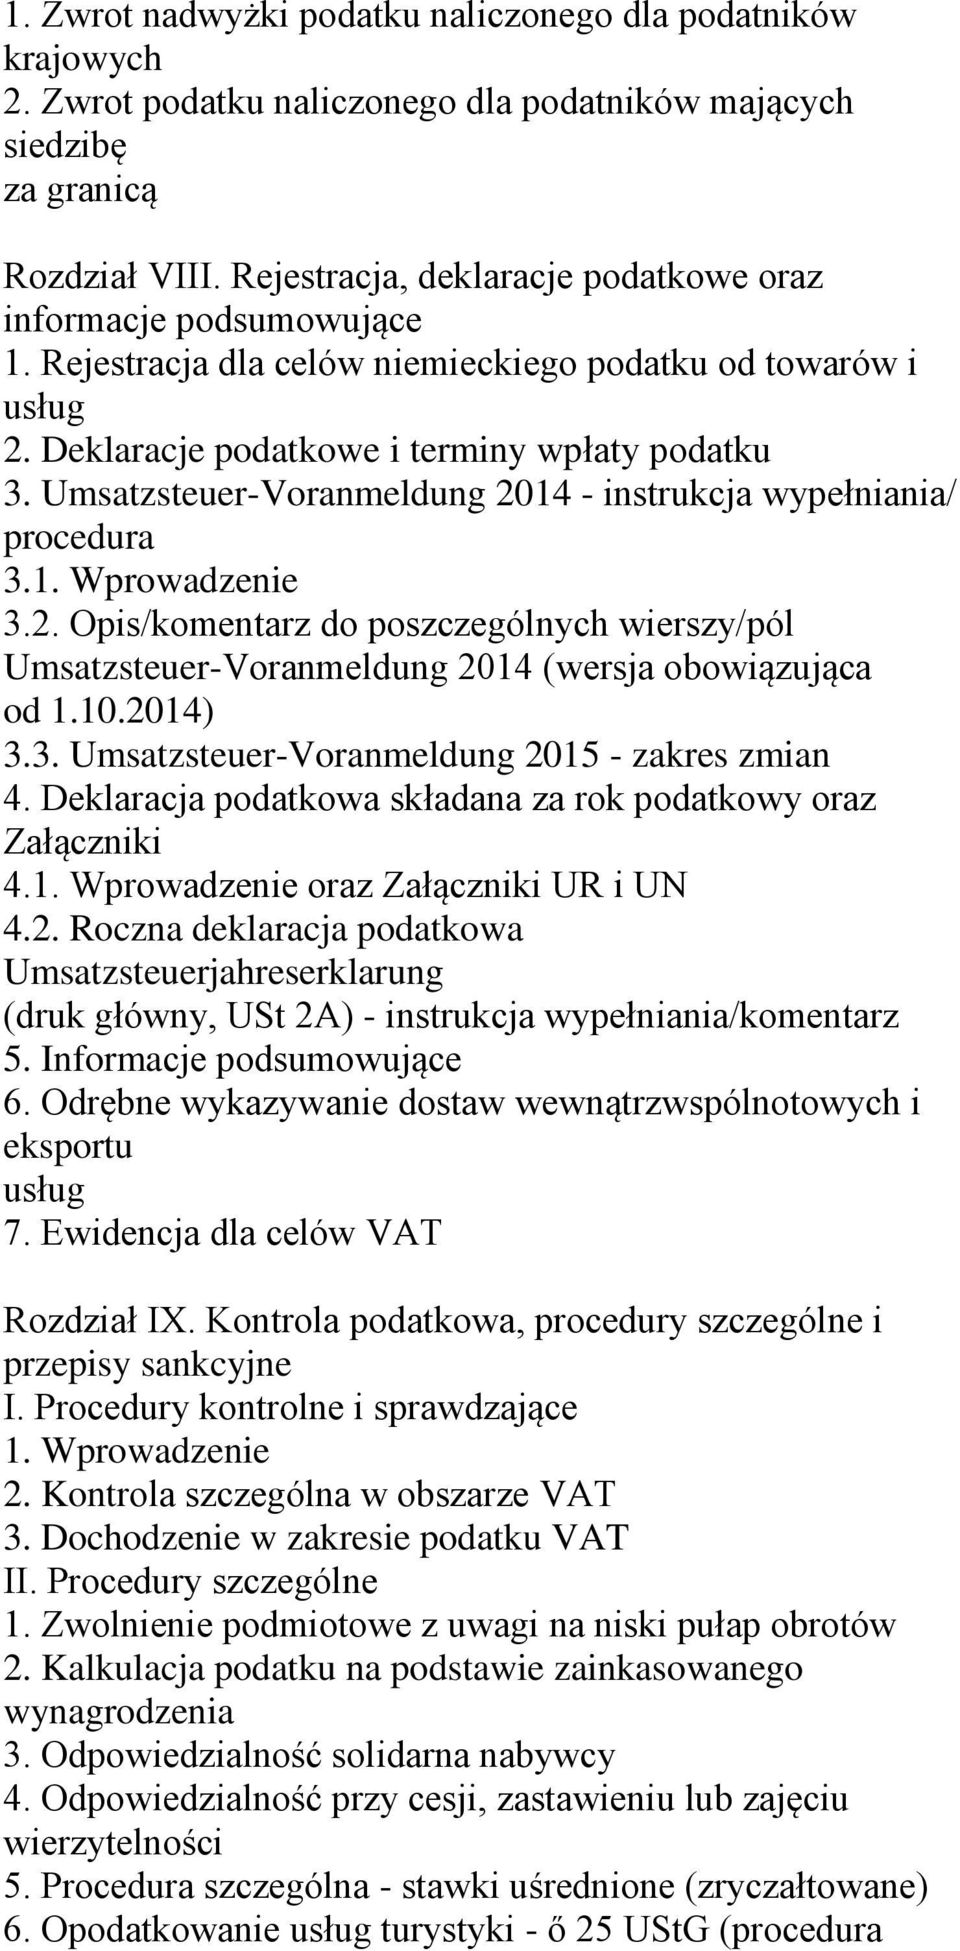 Umsatzsteuer-Voranmeldung 2014 - instrukcja wypełniania/ procedura 3.1. Wprowadzenie 3.2. Opis/komentarz do poszczególnych wierszy/pól Umsatzsteuer-Voranmeldung 2014 (wersja obowiązująca od 1.10.